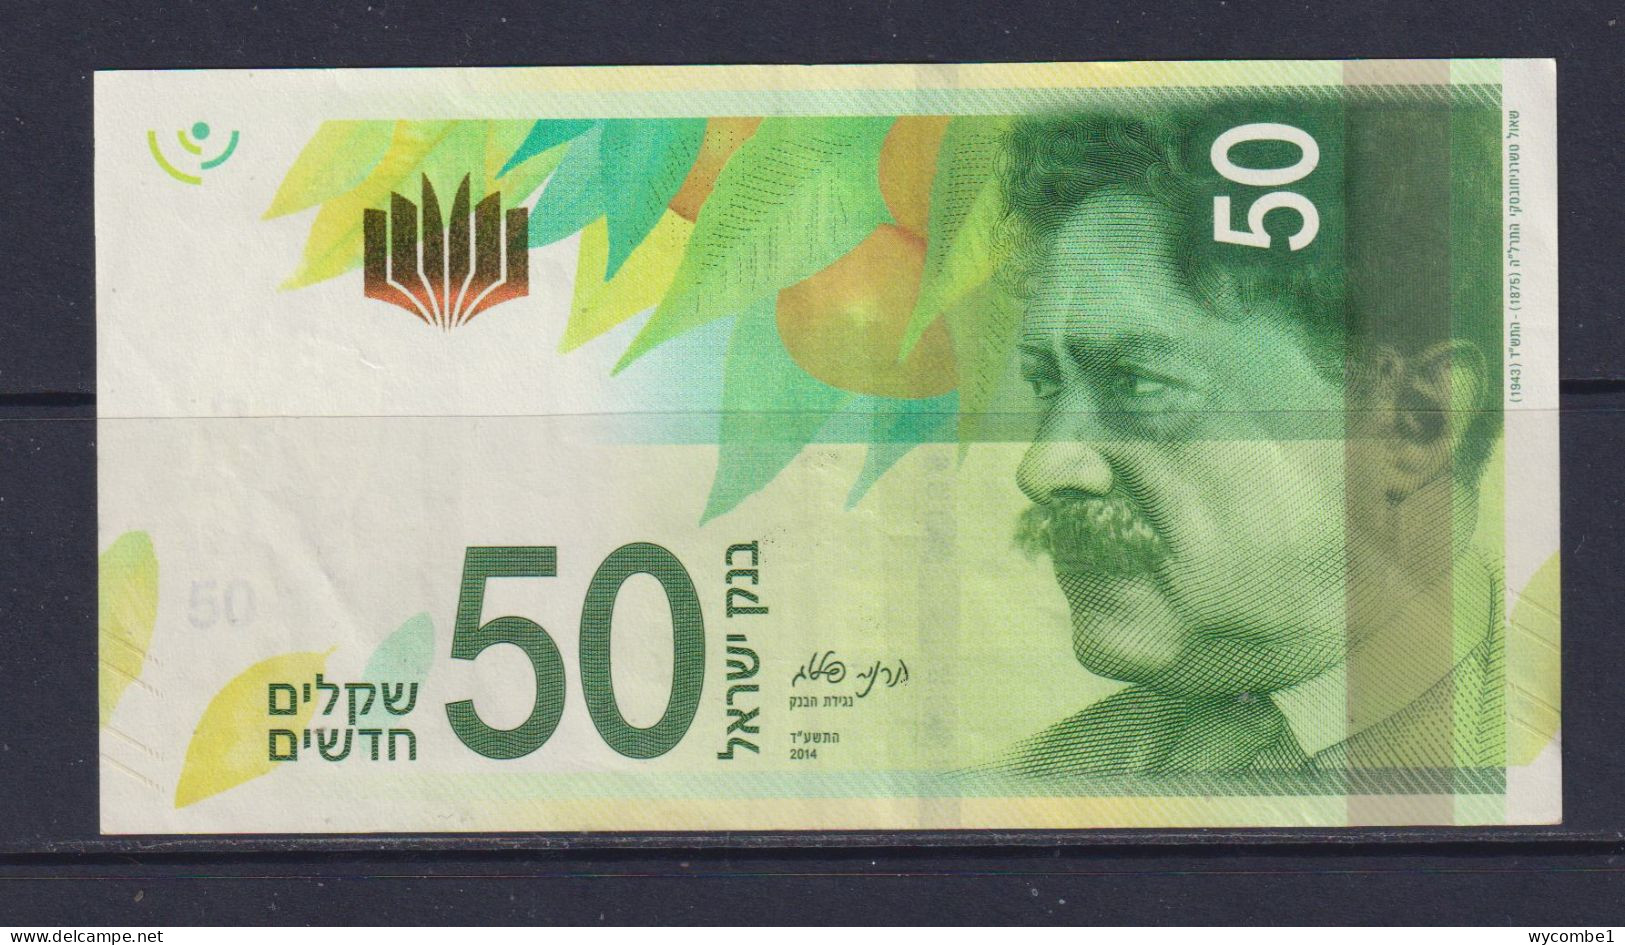 ISRAEL - 2014 50 New Shekels AUNC/XF Banknote - Israele